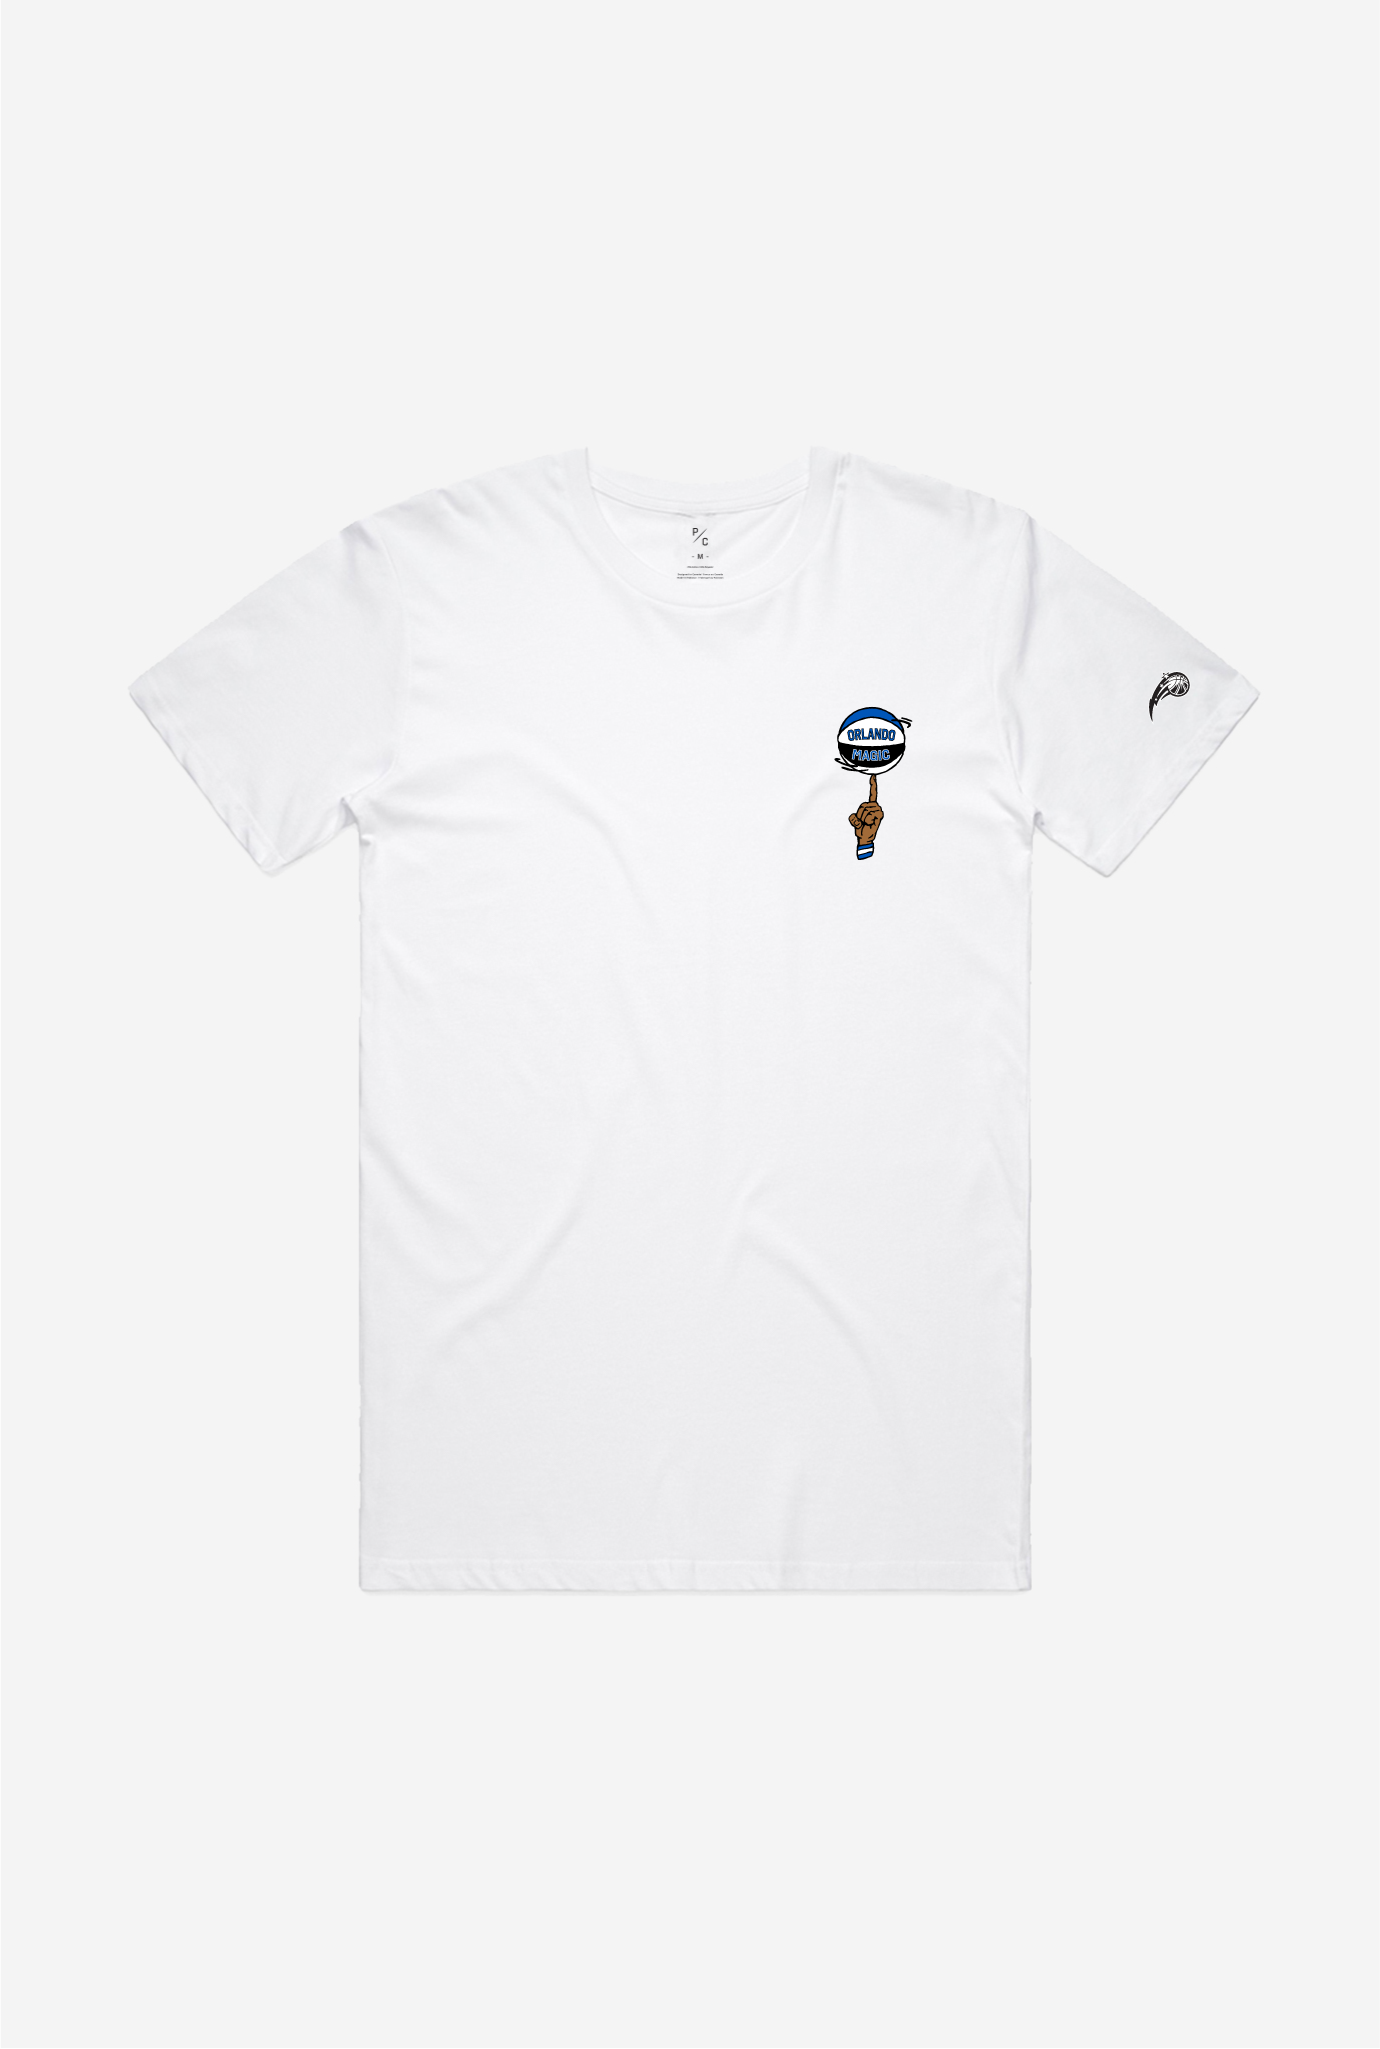 Orlando Magic Spinning Ball T-Shirt - White